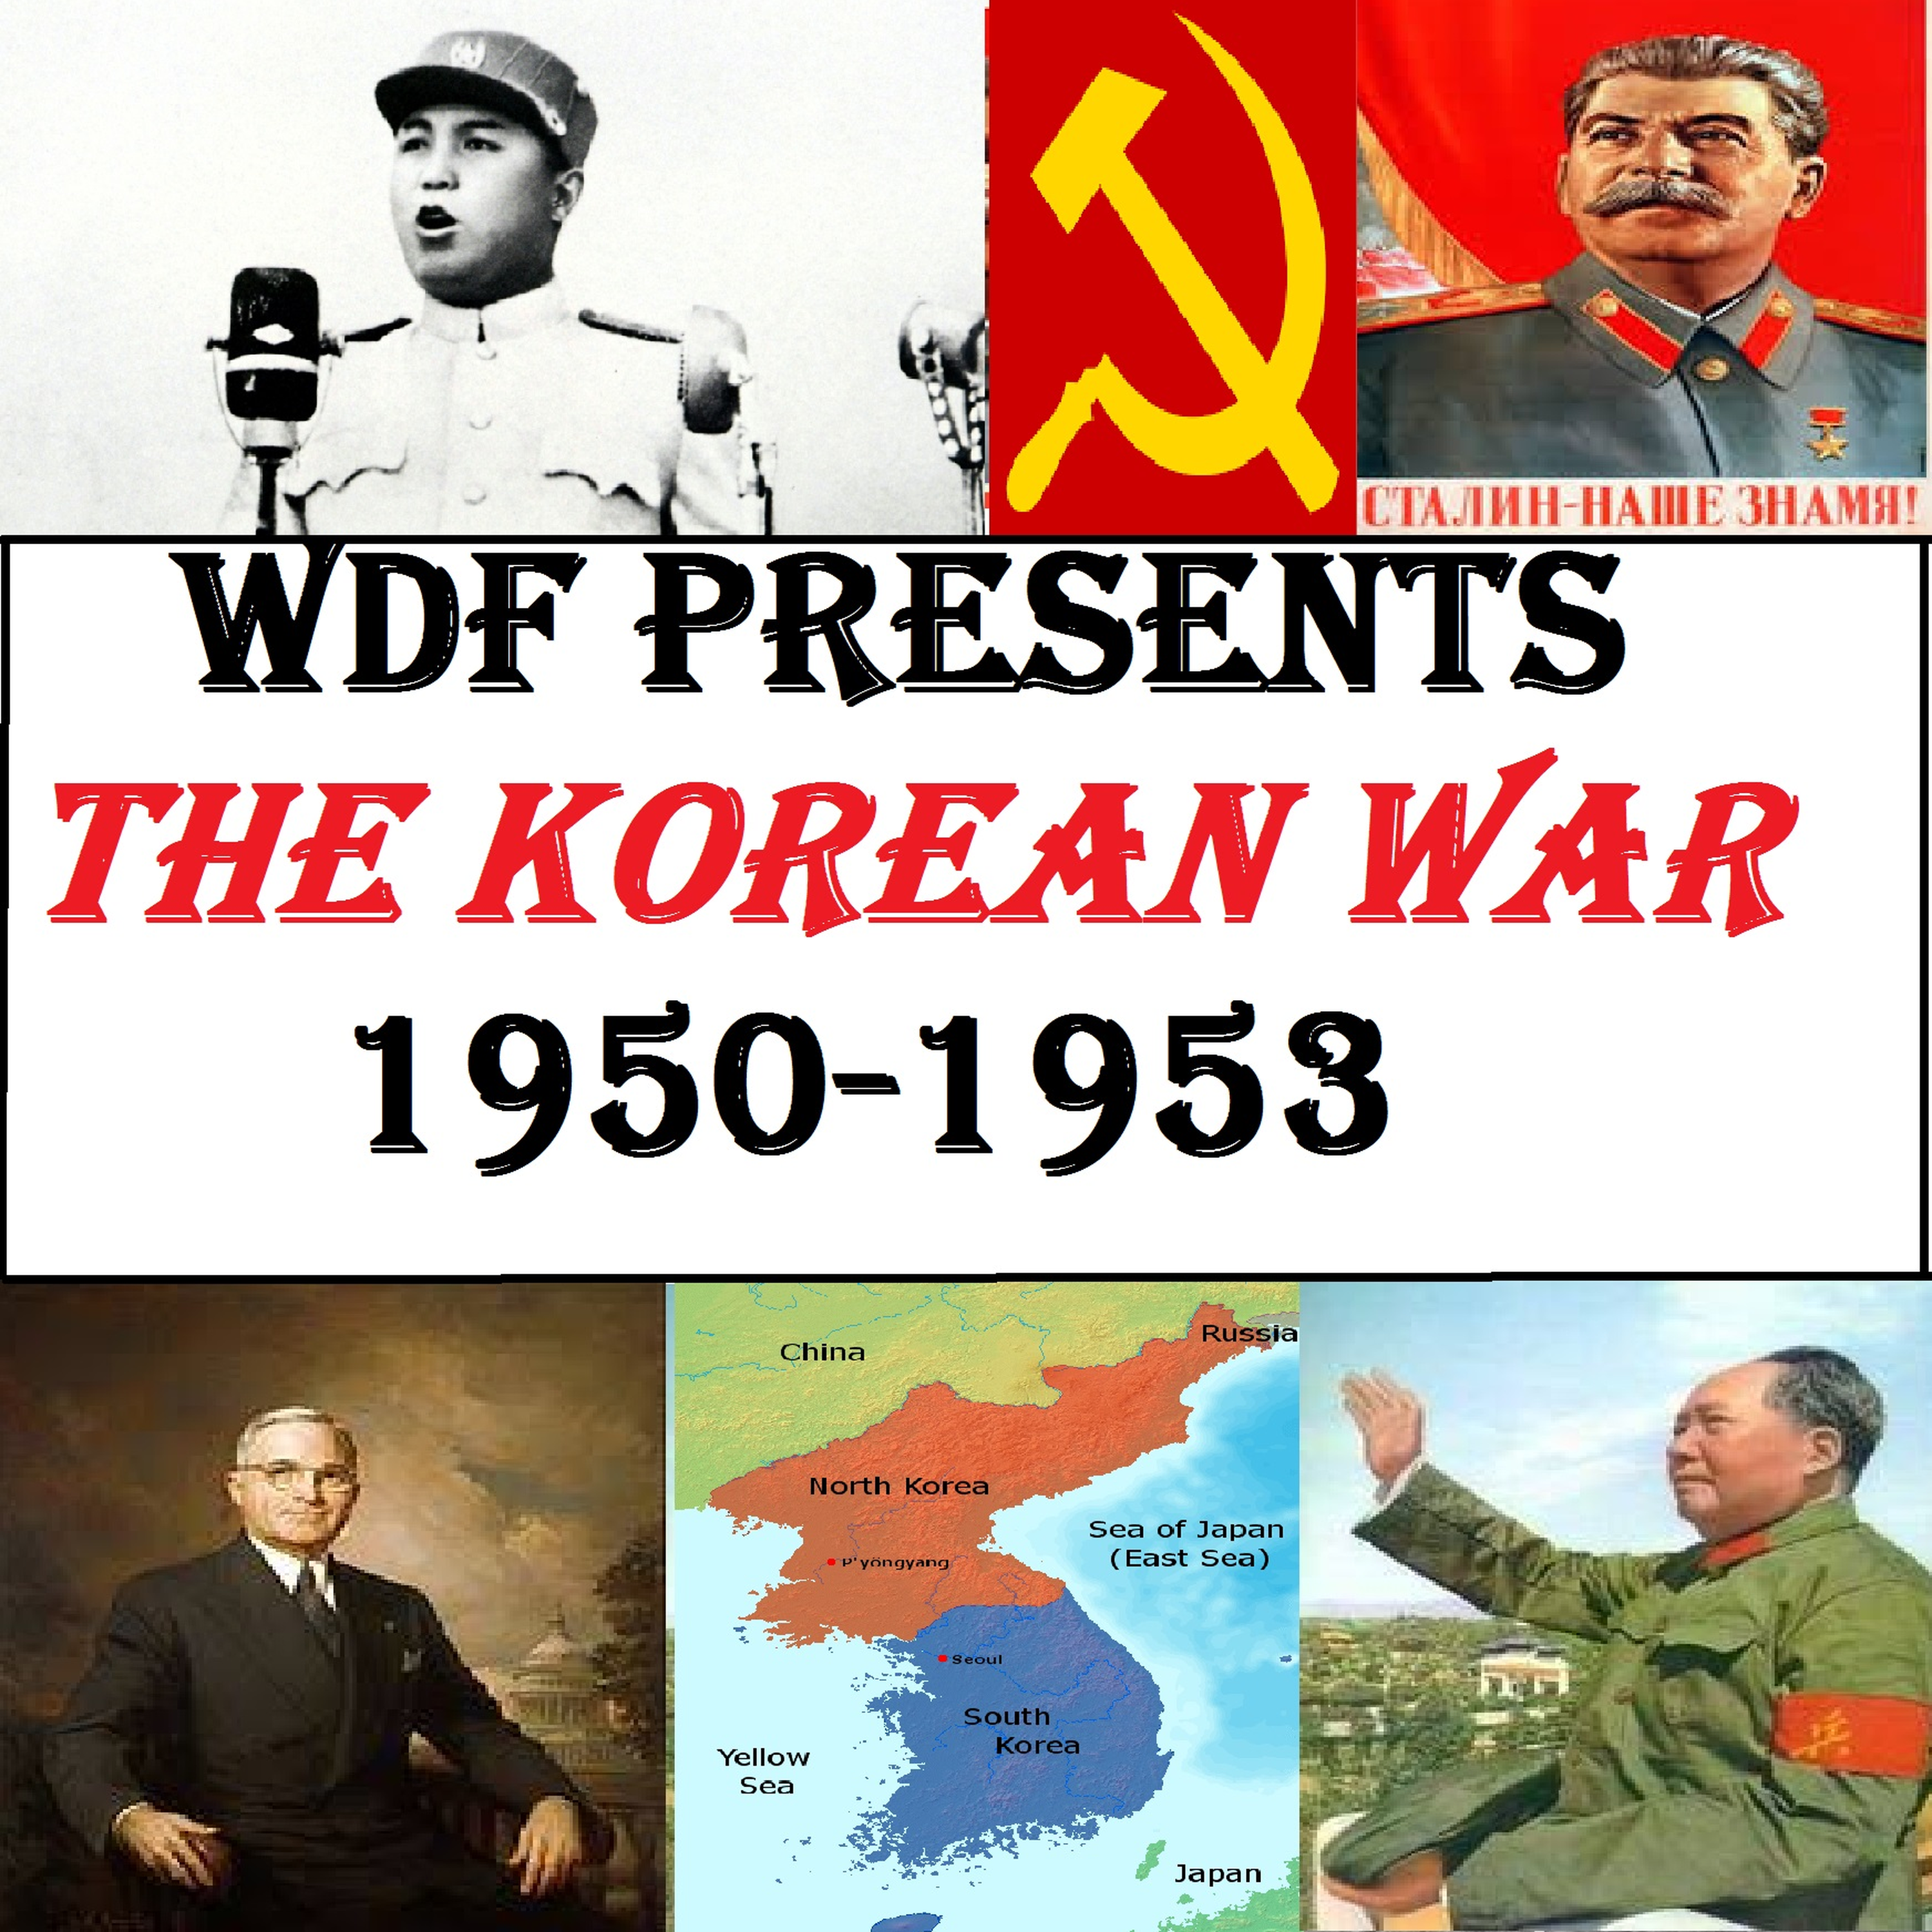 Korean War #28: London Stalling